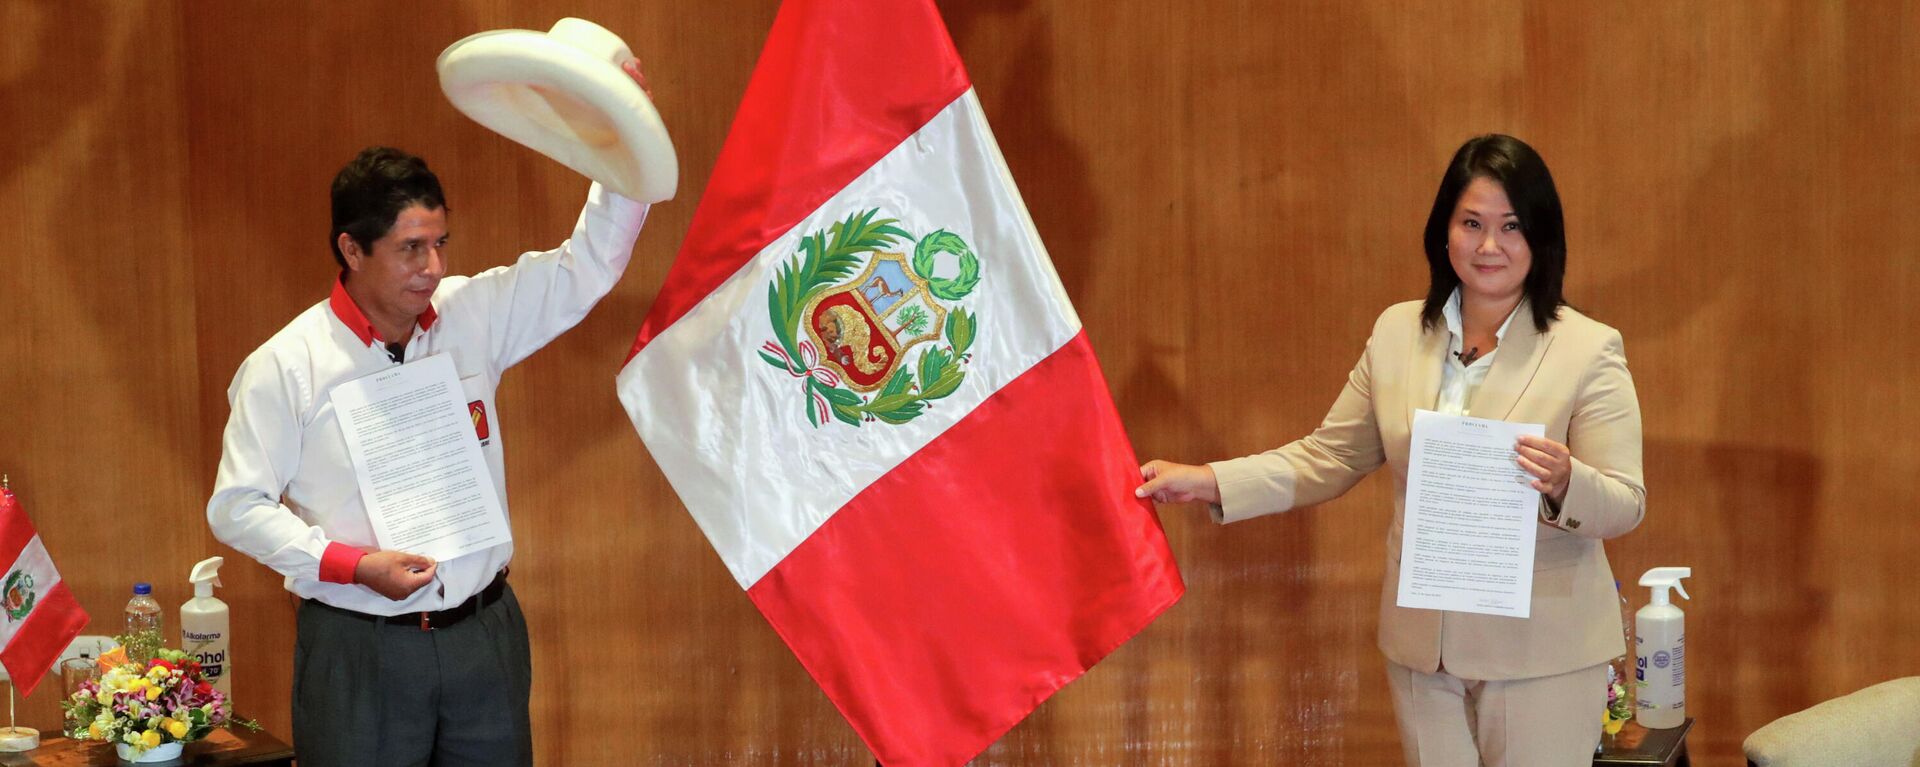 Los candidatos Pedro Castillo (Perú Libre, izquierda) y Keiko Fujimori (Fuerza Popular, derecha) - Sputnik Mundo, 1920, 10.06.2021